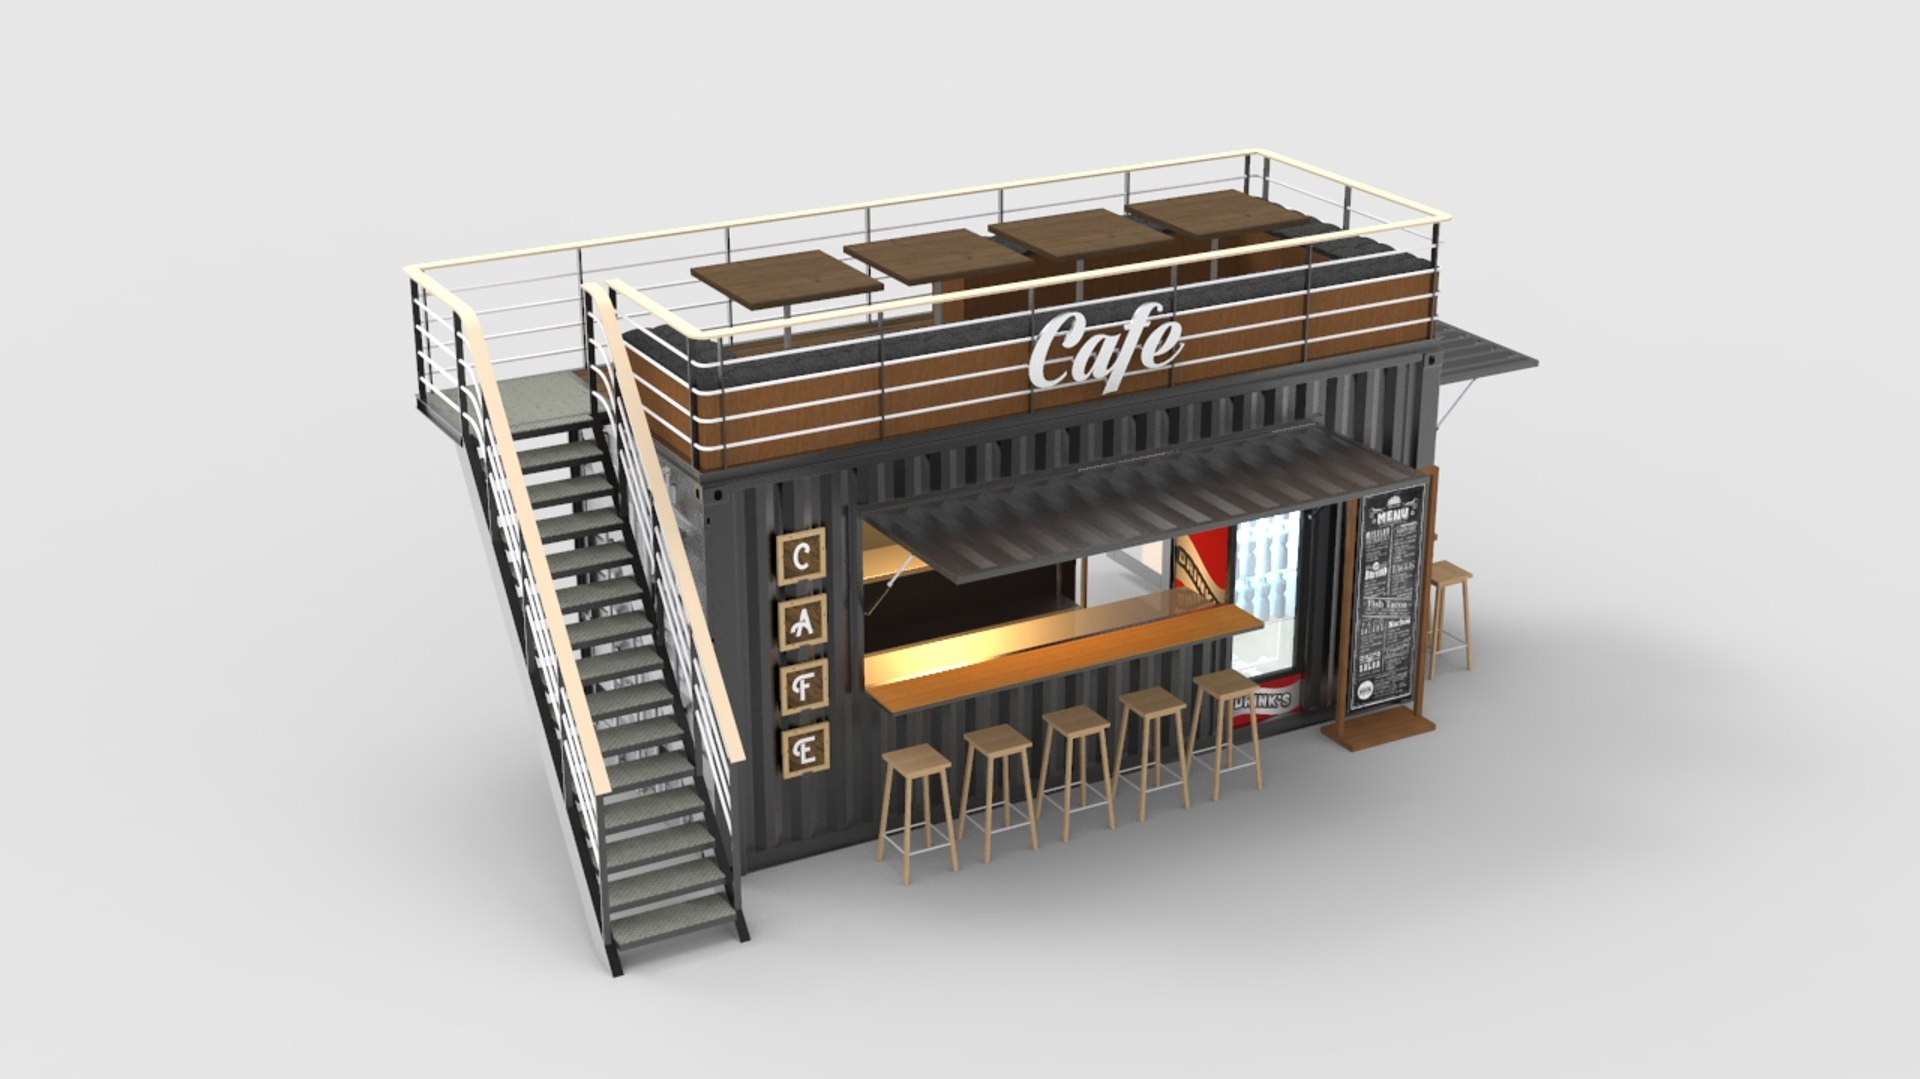 Mini Cafe Container 3D model - TurboSquid 2097972